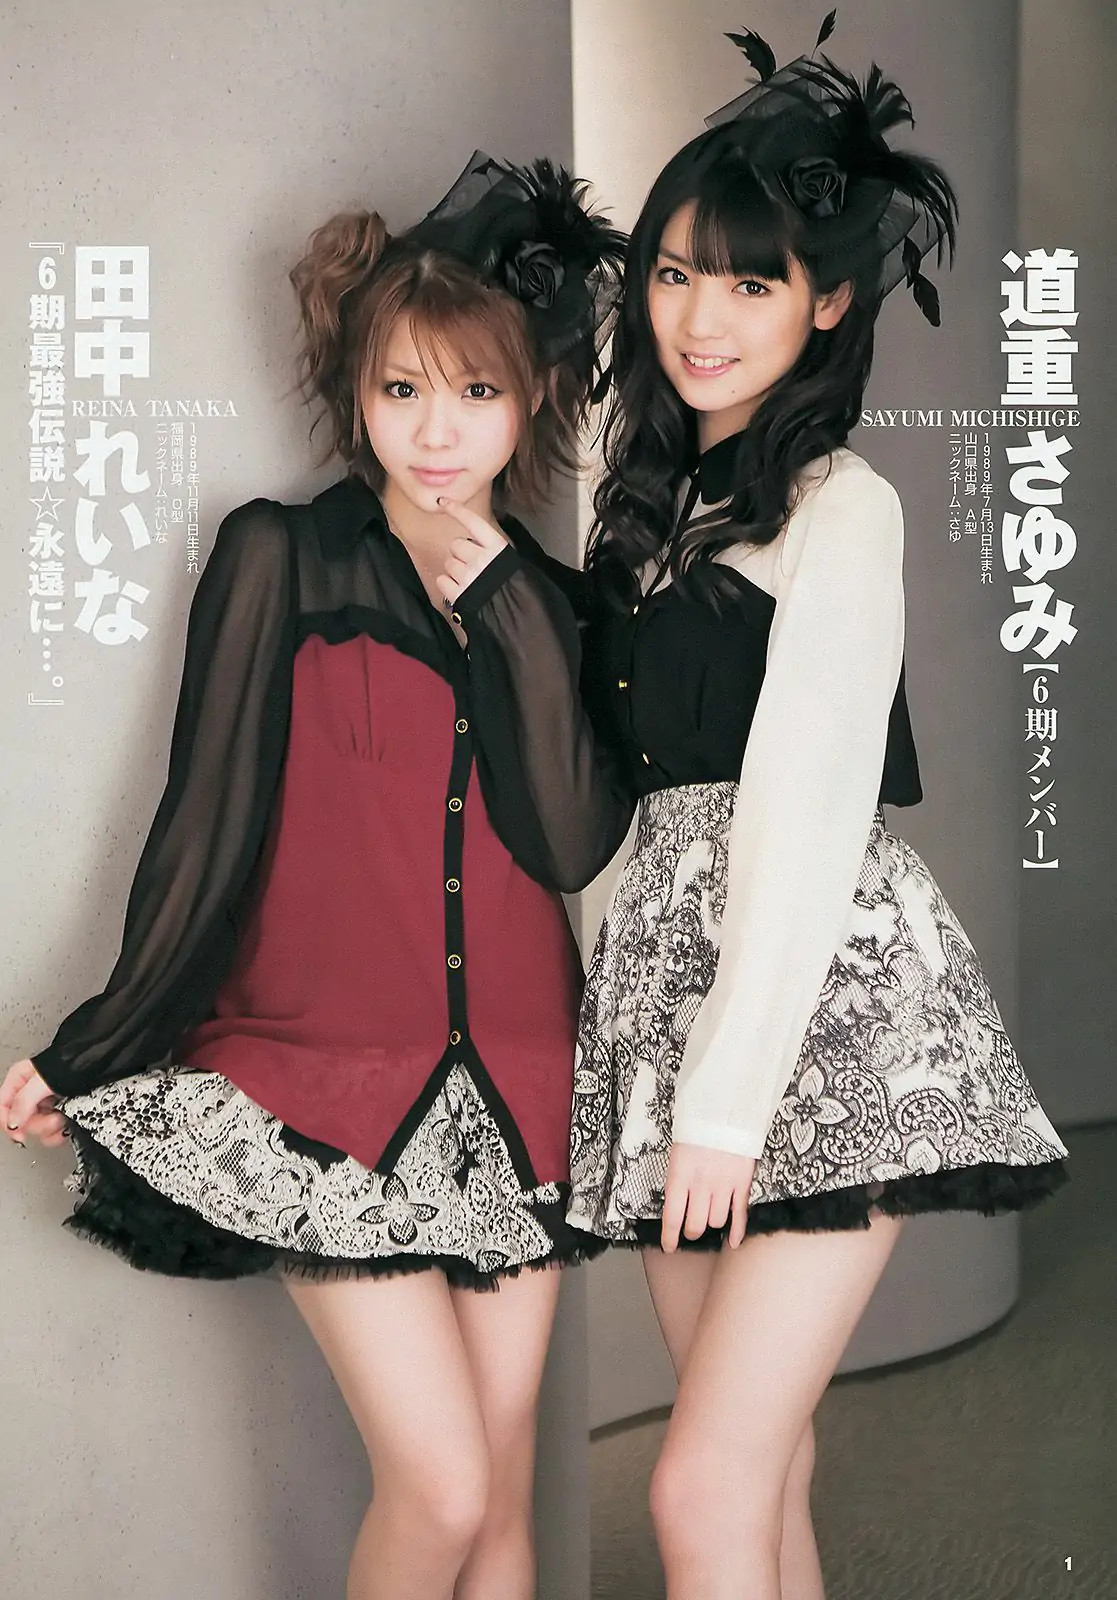 モーニング娘。 西内まりや [Weekly Young Jump] 2013年No.18 写真杂志